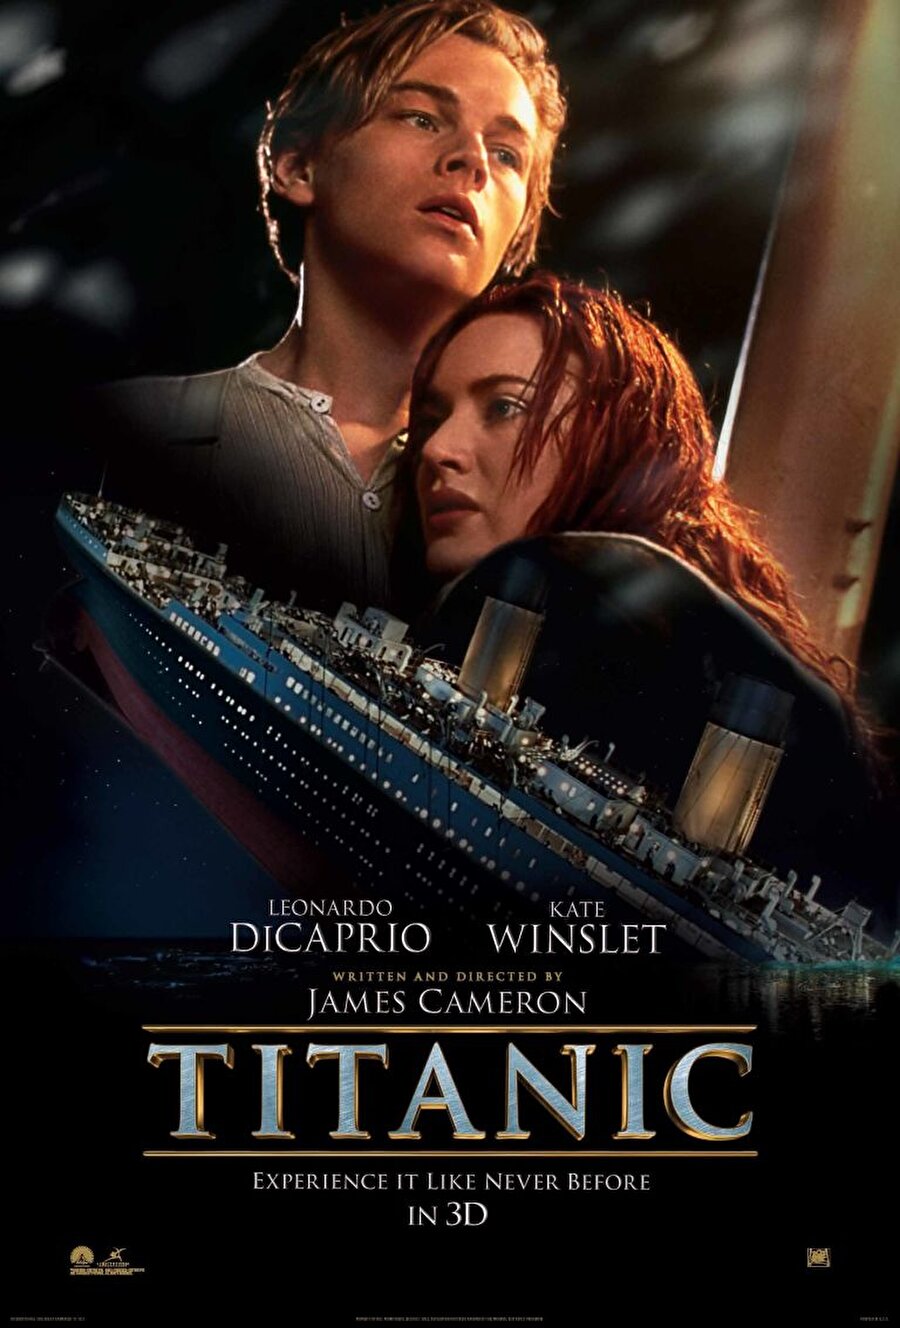 Titanic
Konusu: Teknolojinin son sürat ilerlediği bir dönemde, insanlar üstesinden gelemeyecekleri hiç bir sorun olamayacağına inanmaya başlamışlardır. 'Titanic' adlı dev transatlantik ise, insanlığın doğaya karşı gövde gösterisi gibidir. Bu 'Düşler Gemisi' nin yolcuları arasında Avrupa`da birkaç yıl geçirdikten sonra Amerika'ya dönmekte olan, Jack adlı genç bir ressam ile nişanlısı ve annesiyle Philadelphia`ya giden Rose adlı genç bir kız da vardır. İki genç, şans eseri tanışacak, aralarındaki sınıf farkına aldırmaksızın birbirlerine yakınlaşacaktır. Bu arada doğa insanoğlunun günden güne artan kibirine bir nokta koymayı planlamaktadır. 